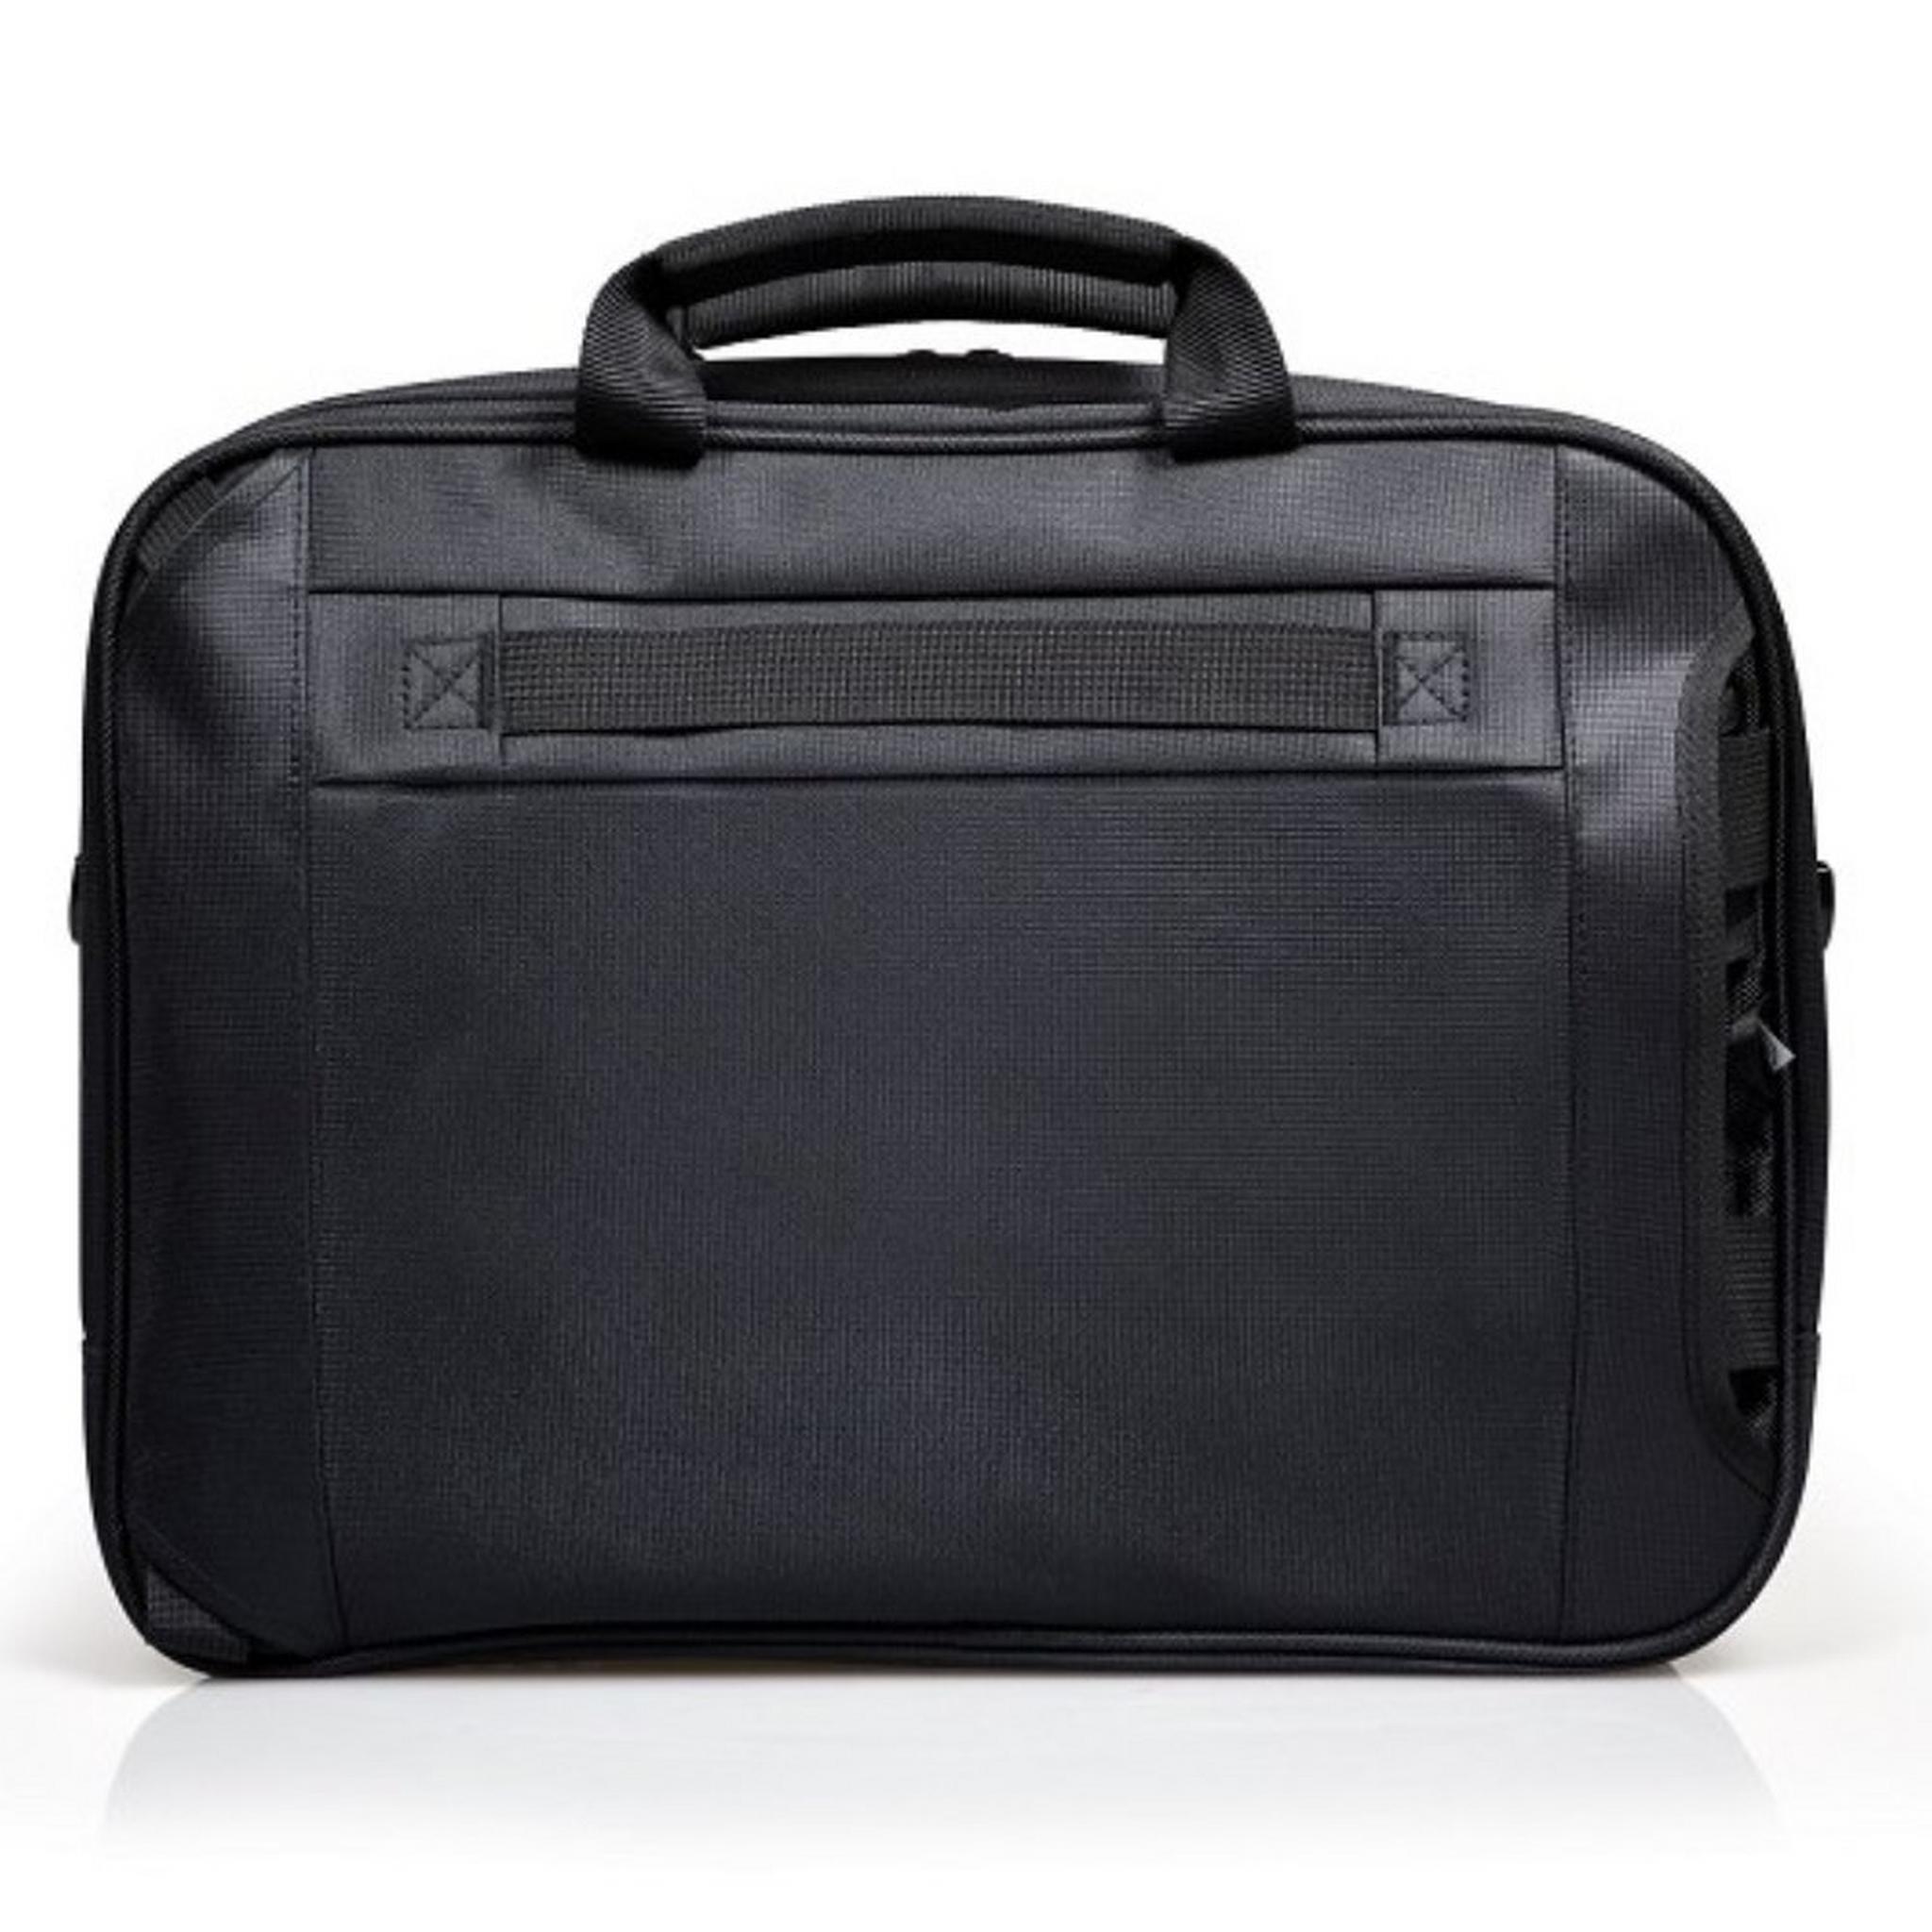 حقيبة لابتوب محمول وحقيبة ظهر بورت ديزاينز مانهاتن كومبو 15.6 بوصة | أسود